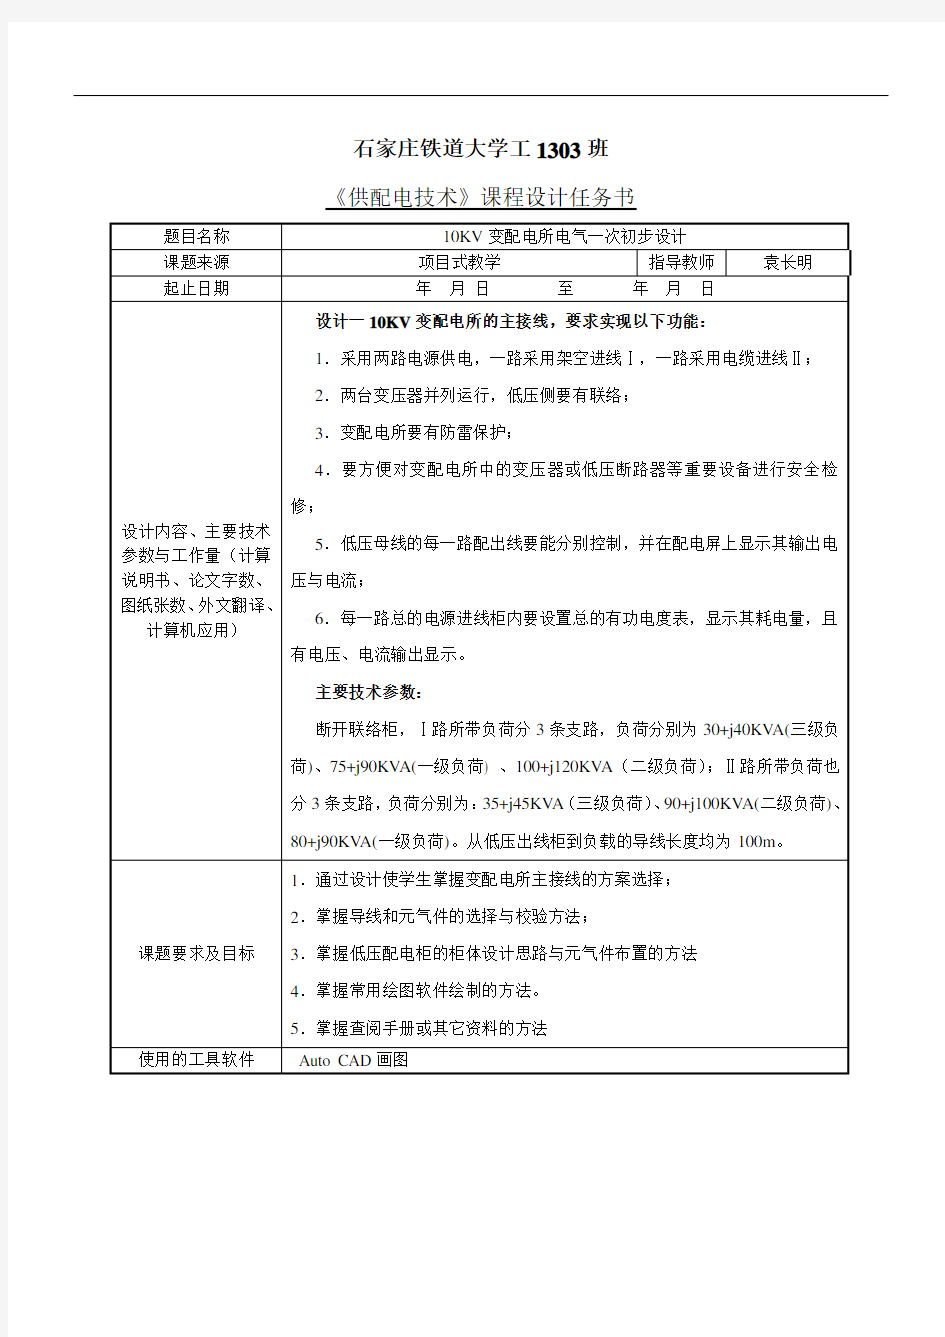 工1303《供配电技术》课程设计任务书(袁长明)综述